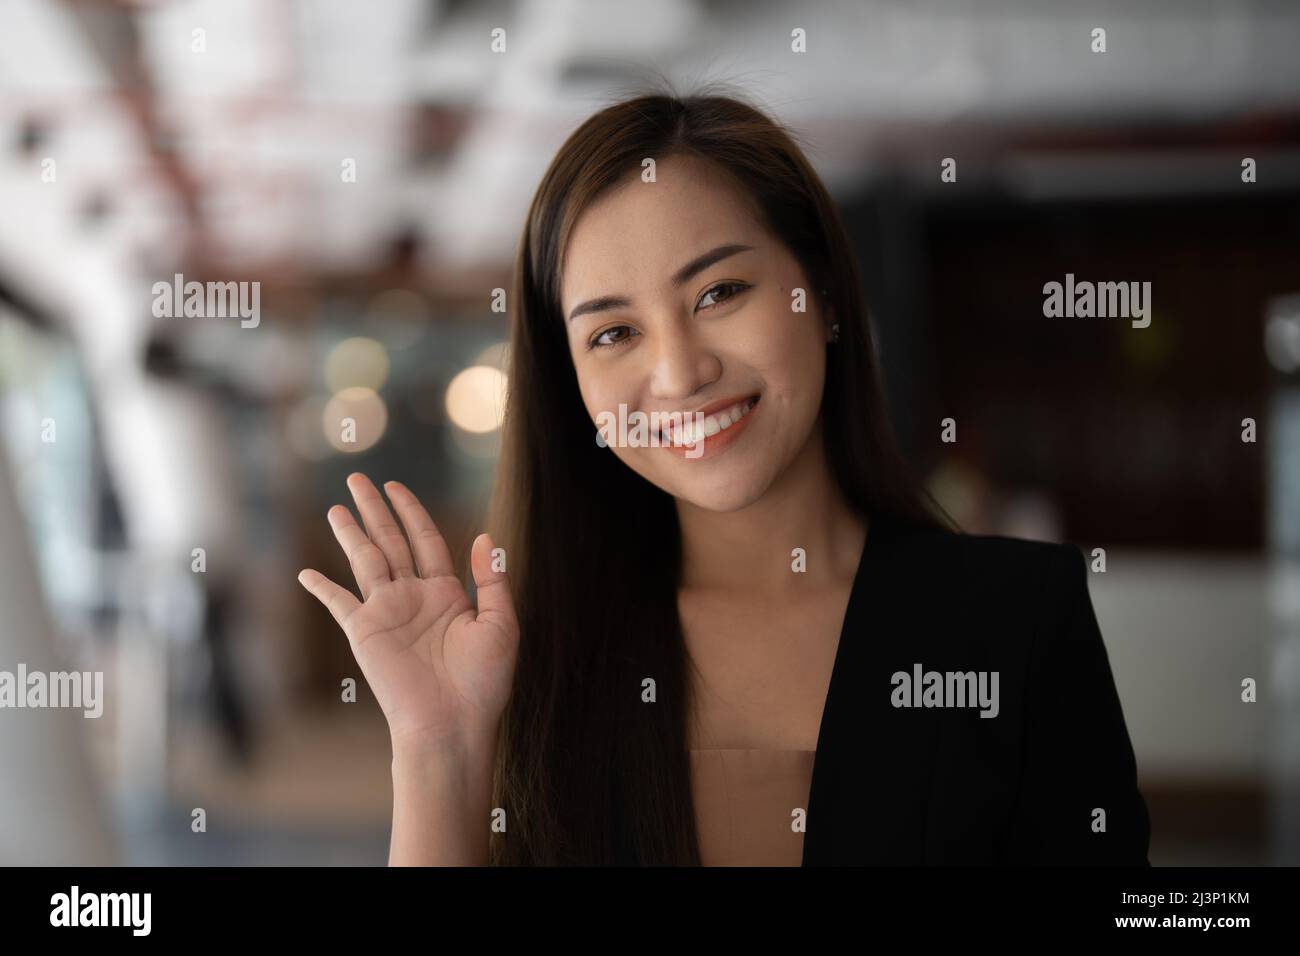 Lächelnde asiatische Frau winkt mit der Hand und schaut auf die Kamera, sie macht einen Videoblog oder ruft zu Hause an, glücklicher, freundlicher Vlogger. Stockfoto